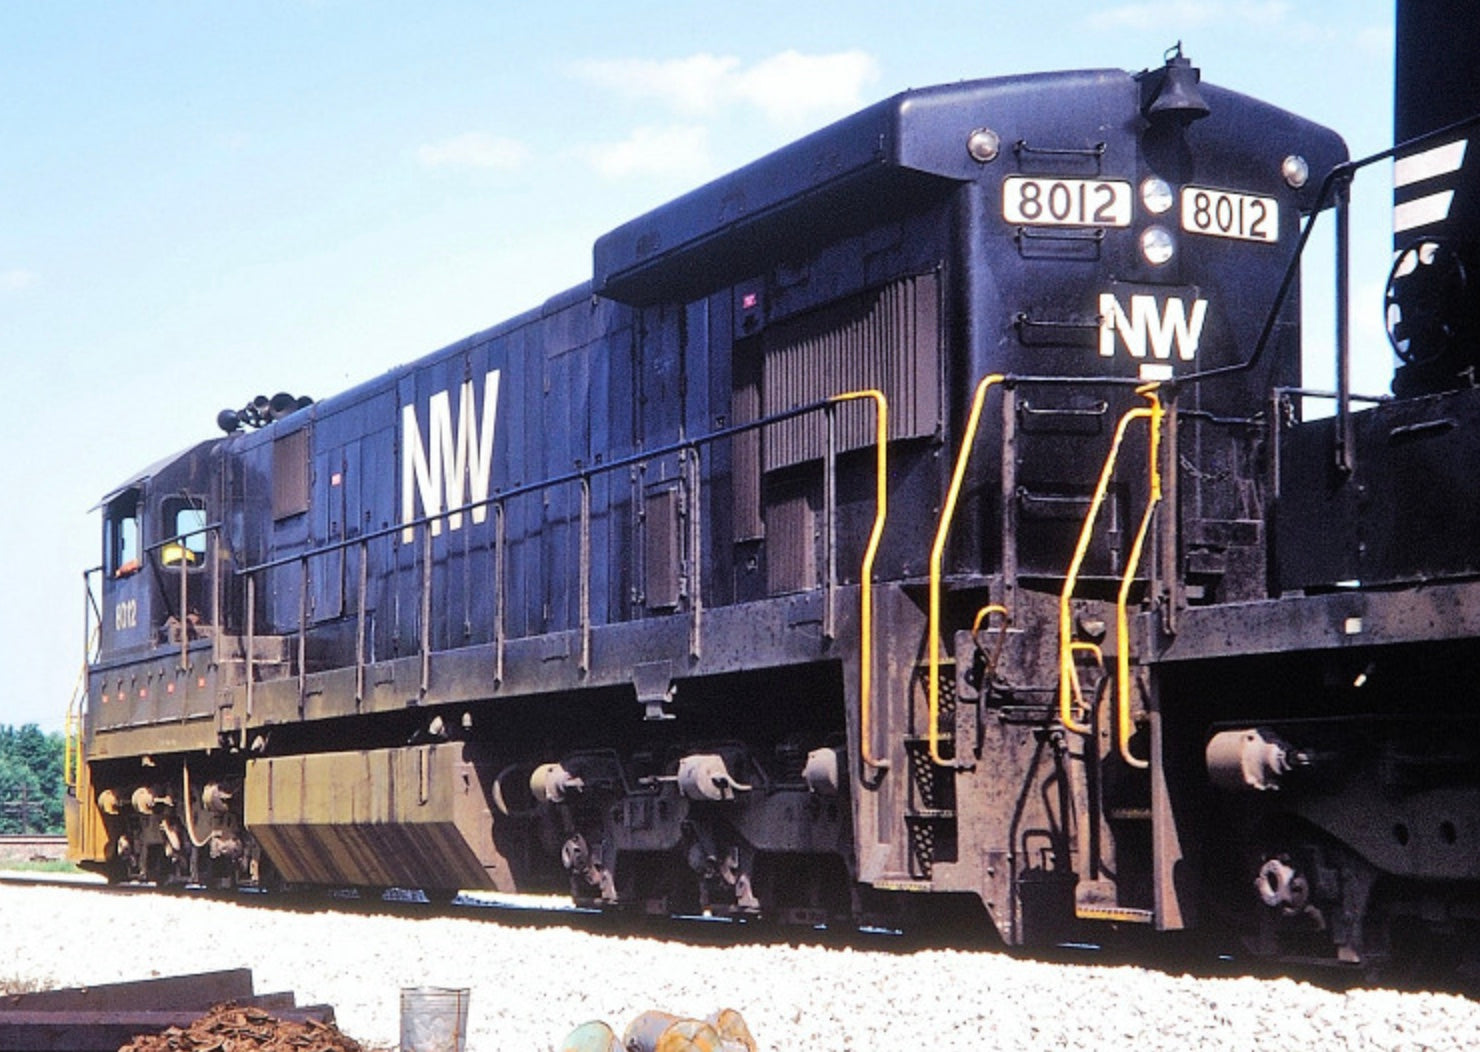 MTH 30-2126NWB-1 - C30-7 Diesel Engine "Norfolk & Western" #8012 w/ PS3 (Black) - Custom Run for MrMuffin'sTrains